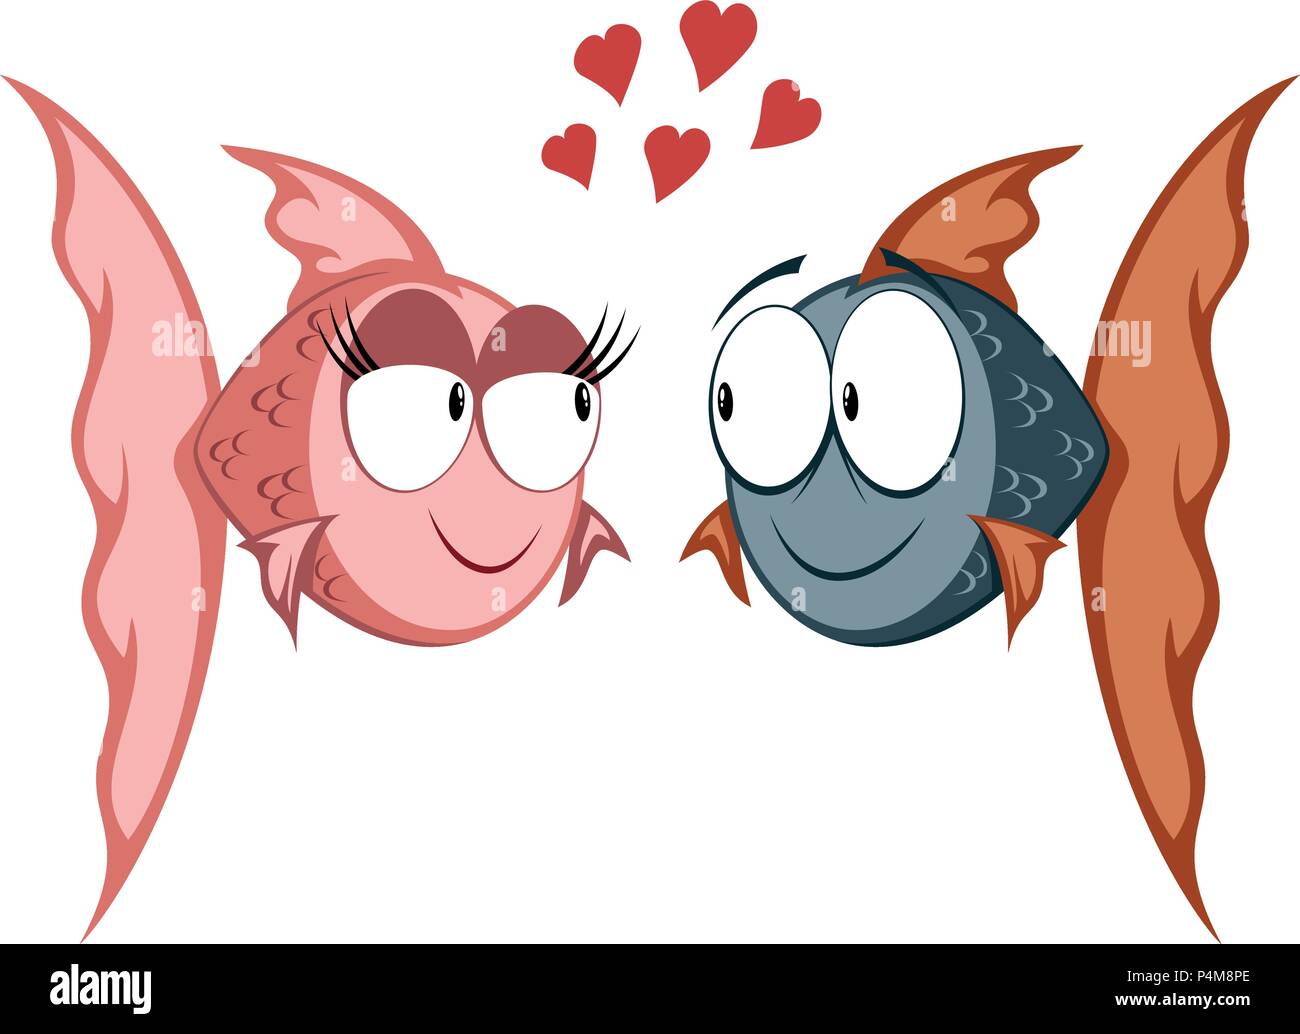 Cool poisson rouge cartoon couple in love Illustration de Vecteur